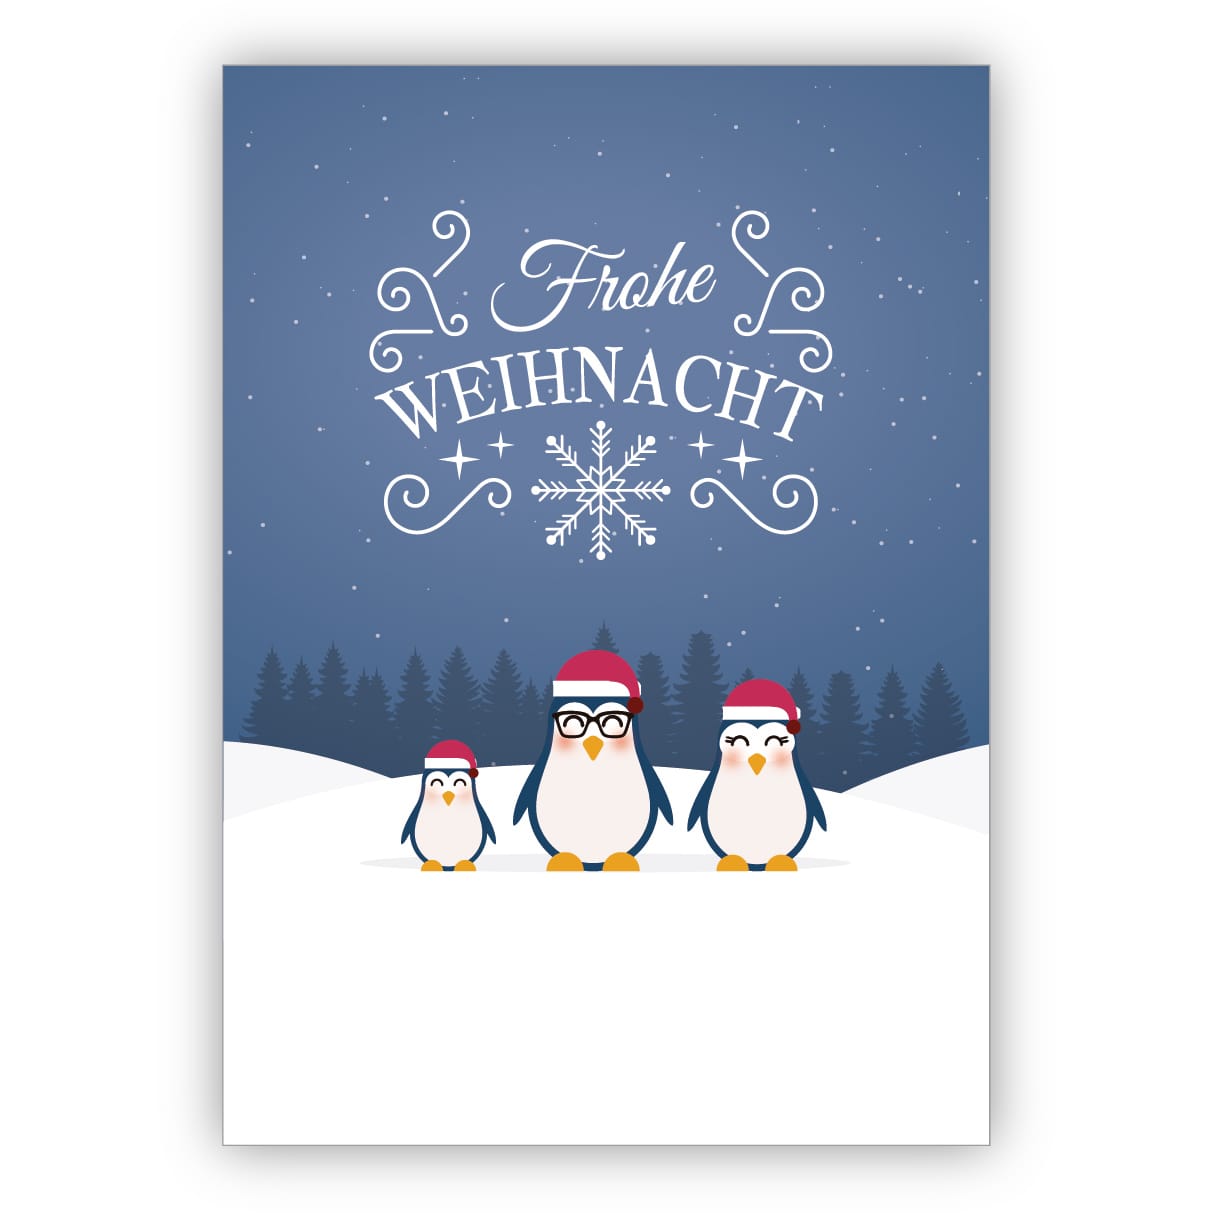 Coole Weihnachtskarte Mit Pinguin Familie Frohe Weihnacht Kartenkaufrausch De